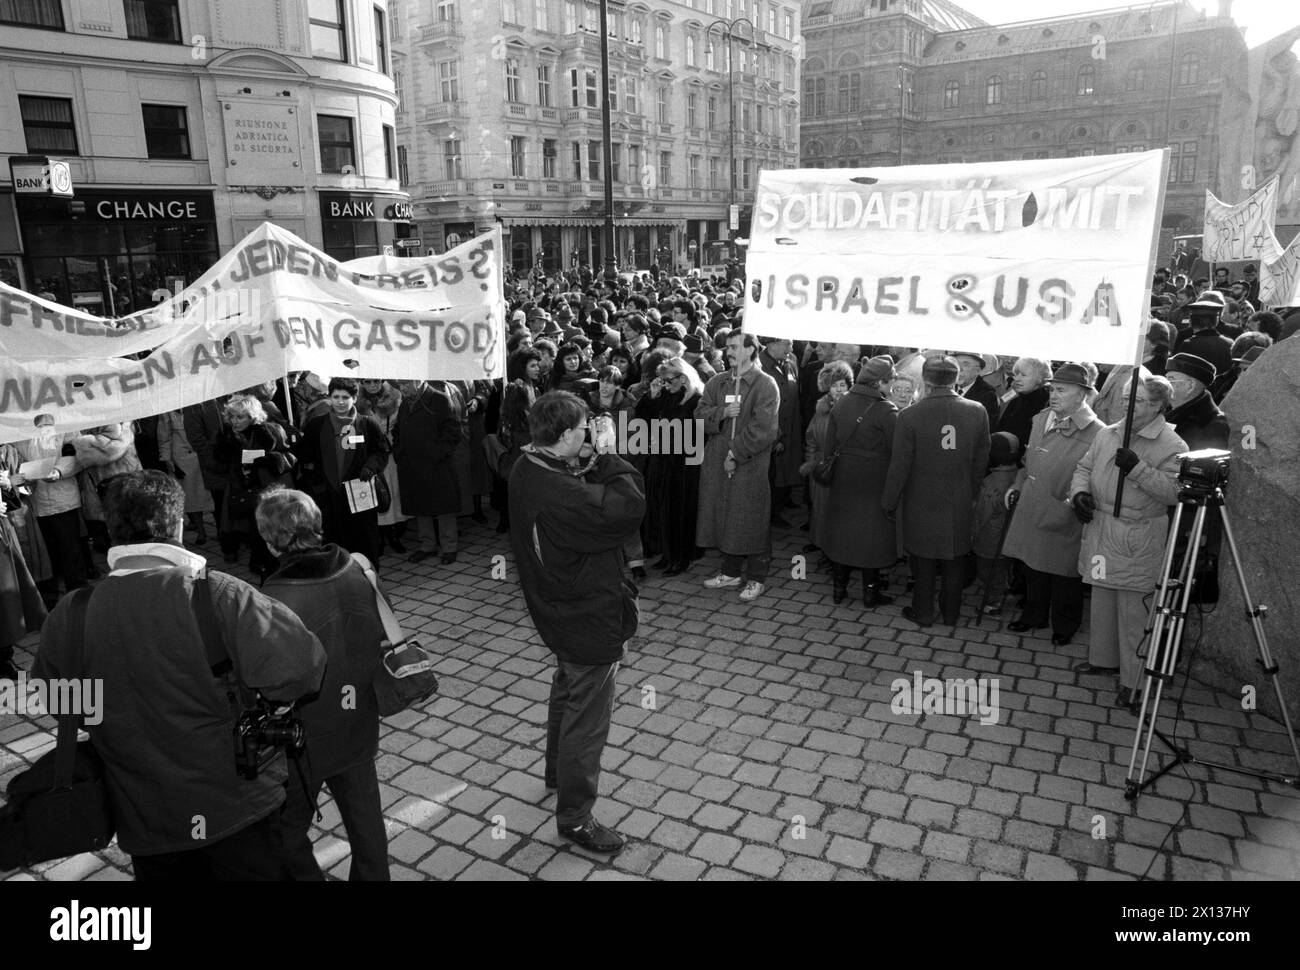 Vienna il 25 gennaio 1991: Manifestazione della Comunità ebraica di Vienna al memoriale antifascista di fronte all'Albertina. Circa 500 persone hanno mostrato la loro solidarietà con Israele. - 19910125 PD0005 - Rechteinfo: Diritti gestiti (RM) Foto Stock